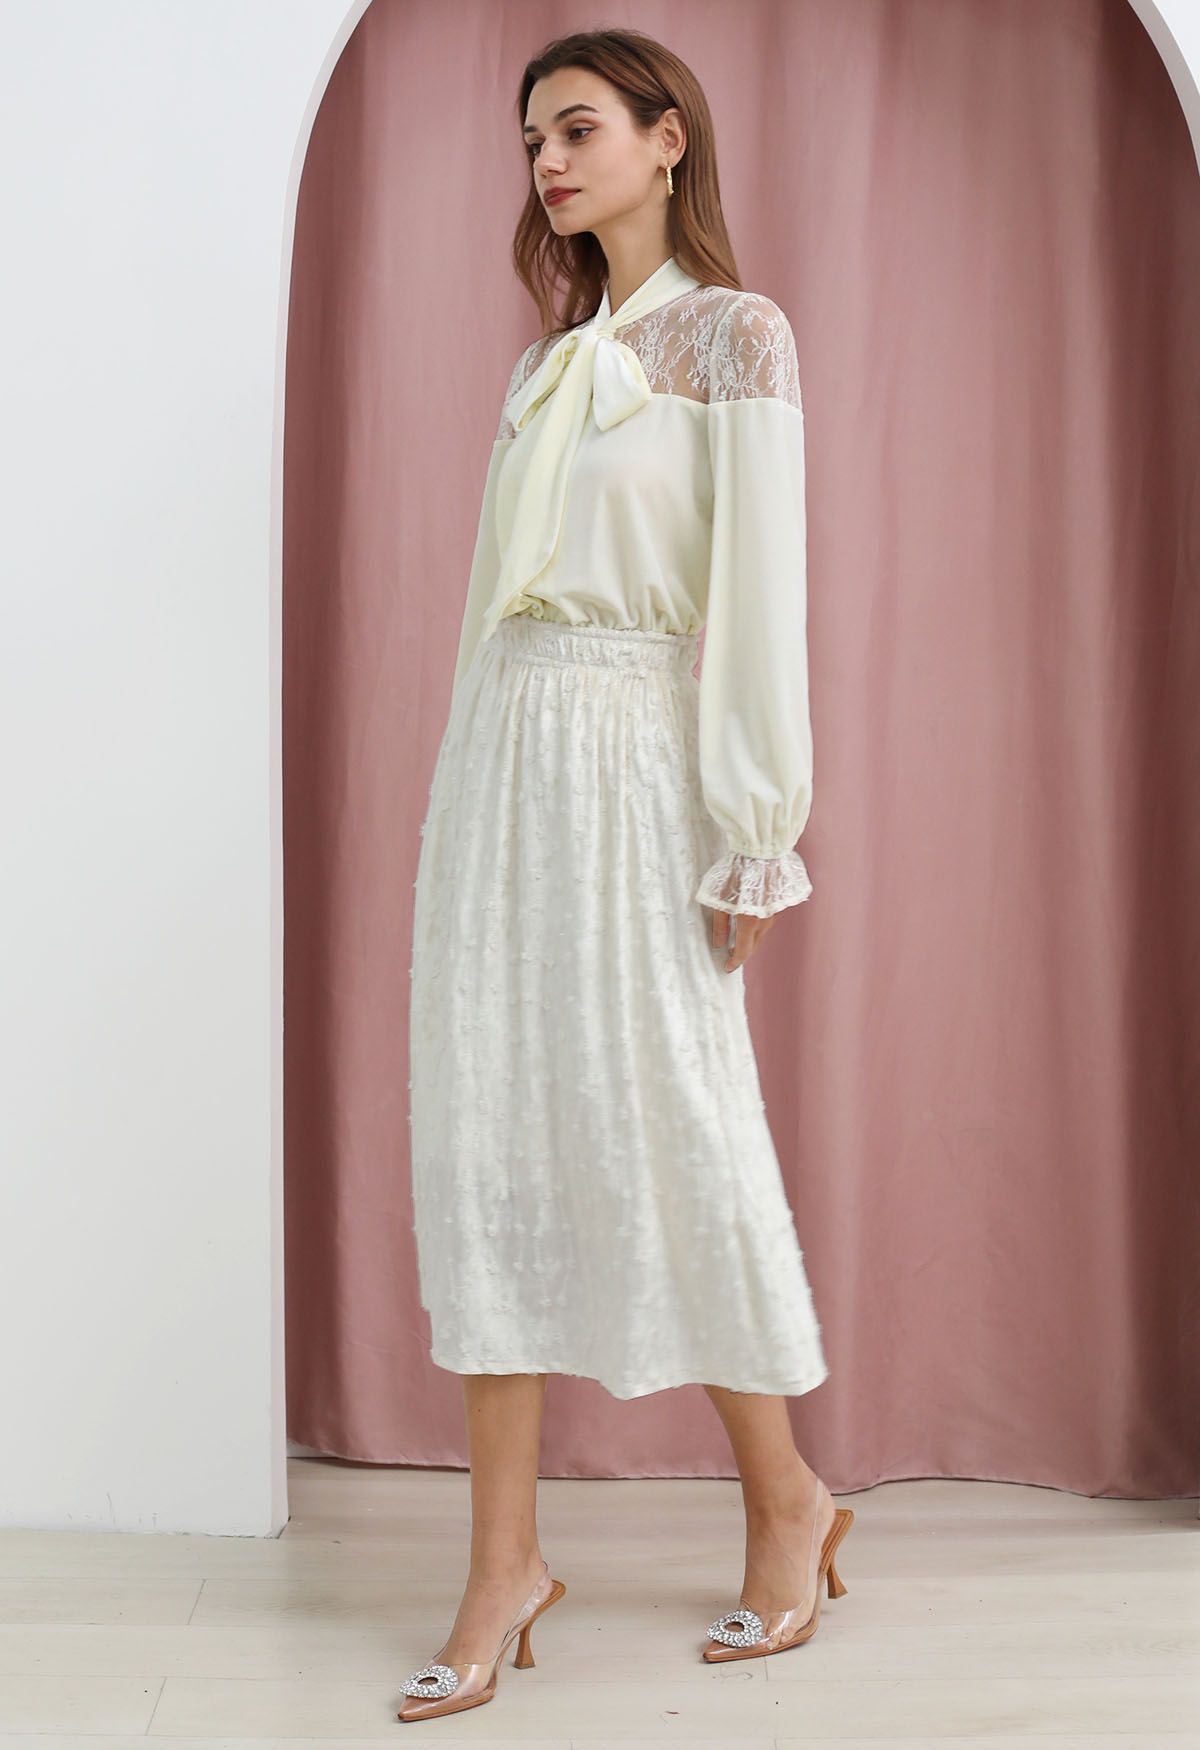 3D Floret Shimmer Fringe Velvet Midi Skirt in White